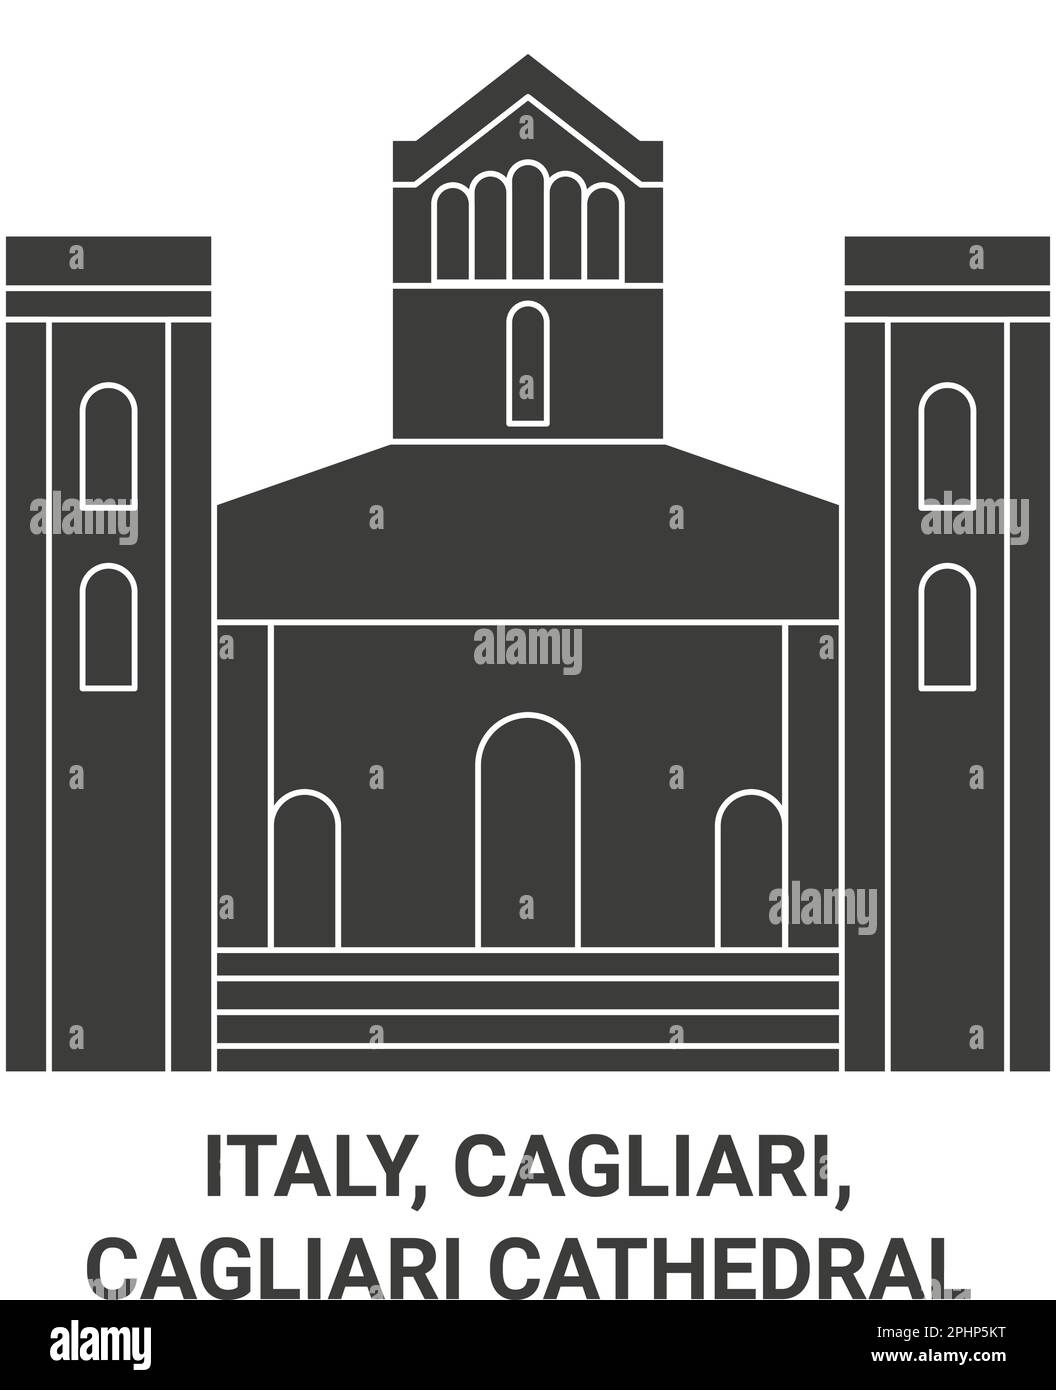 Italien, Cagliari, Cagliari Kathedrale reisen Wahrzeichen Vektordarstellung Stock Vektor